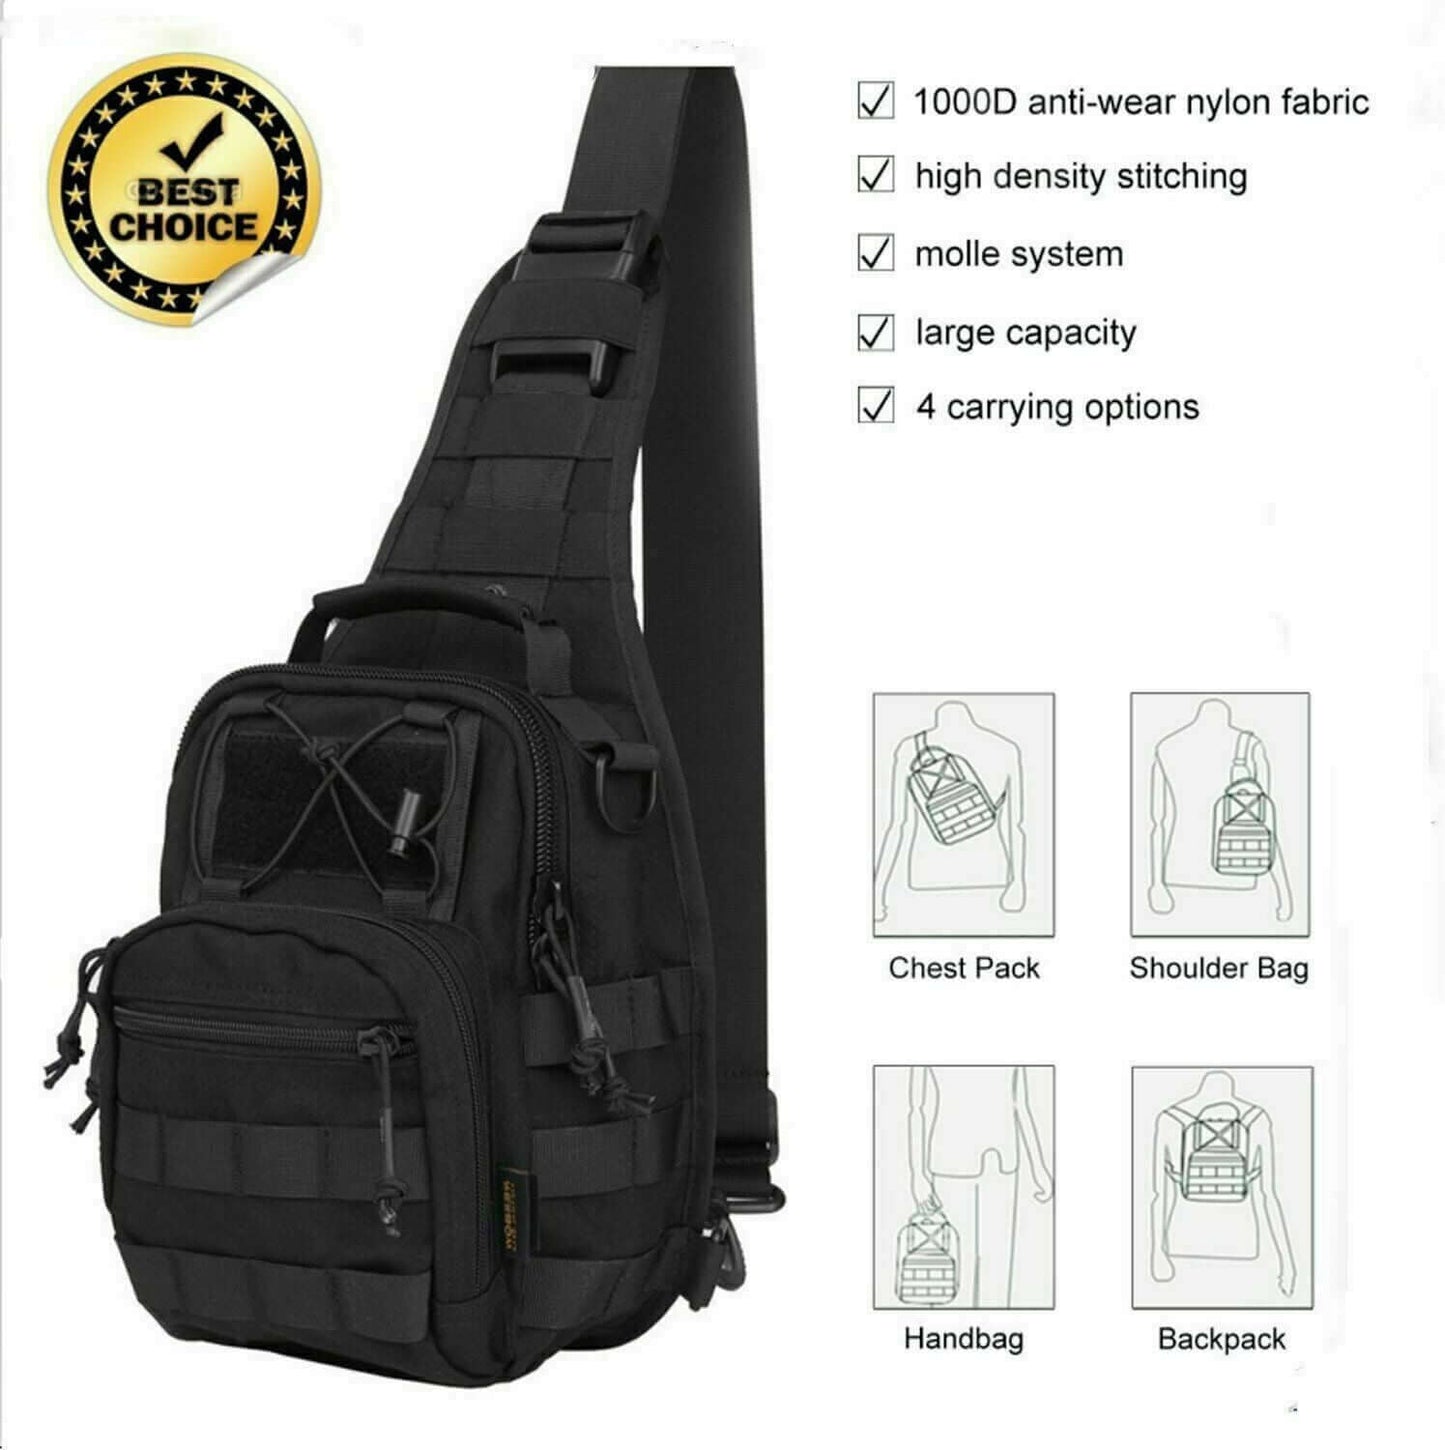 Black Tactical Sling Bag - Men's Molle Chest and Shoulder Backpack